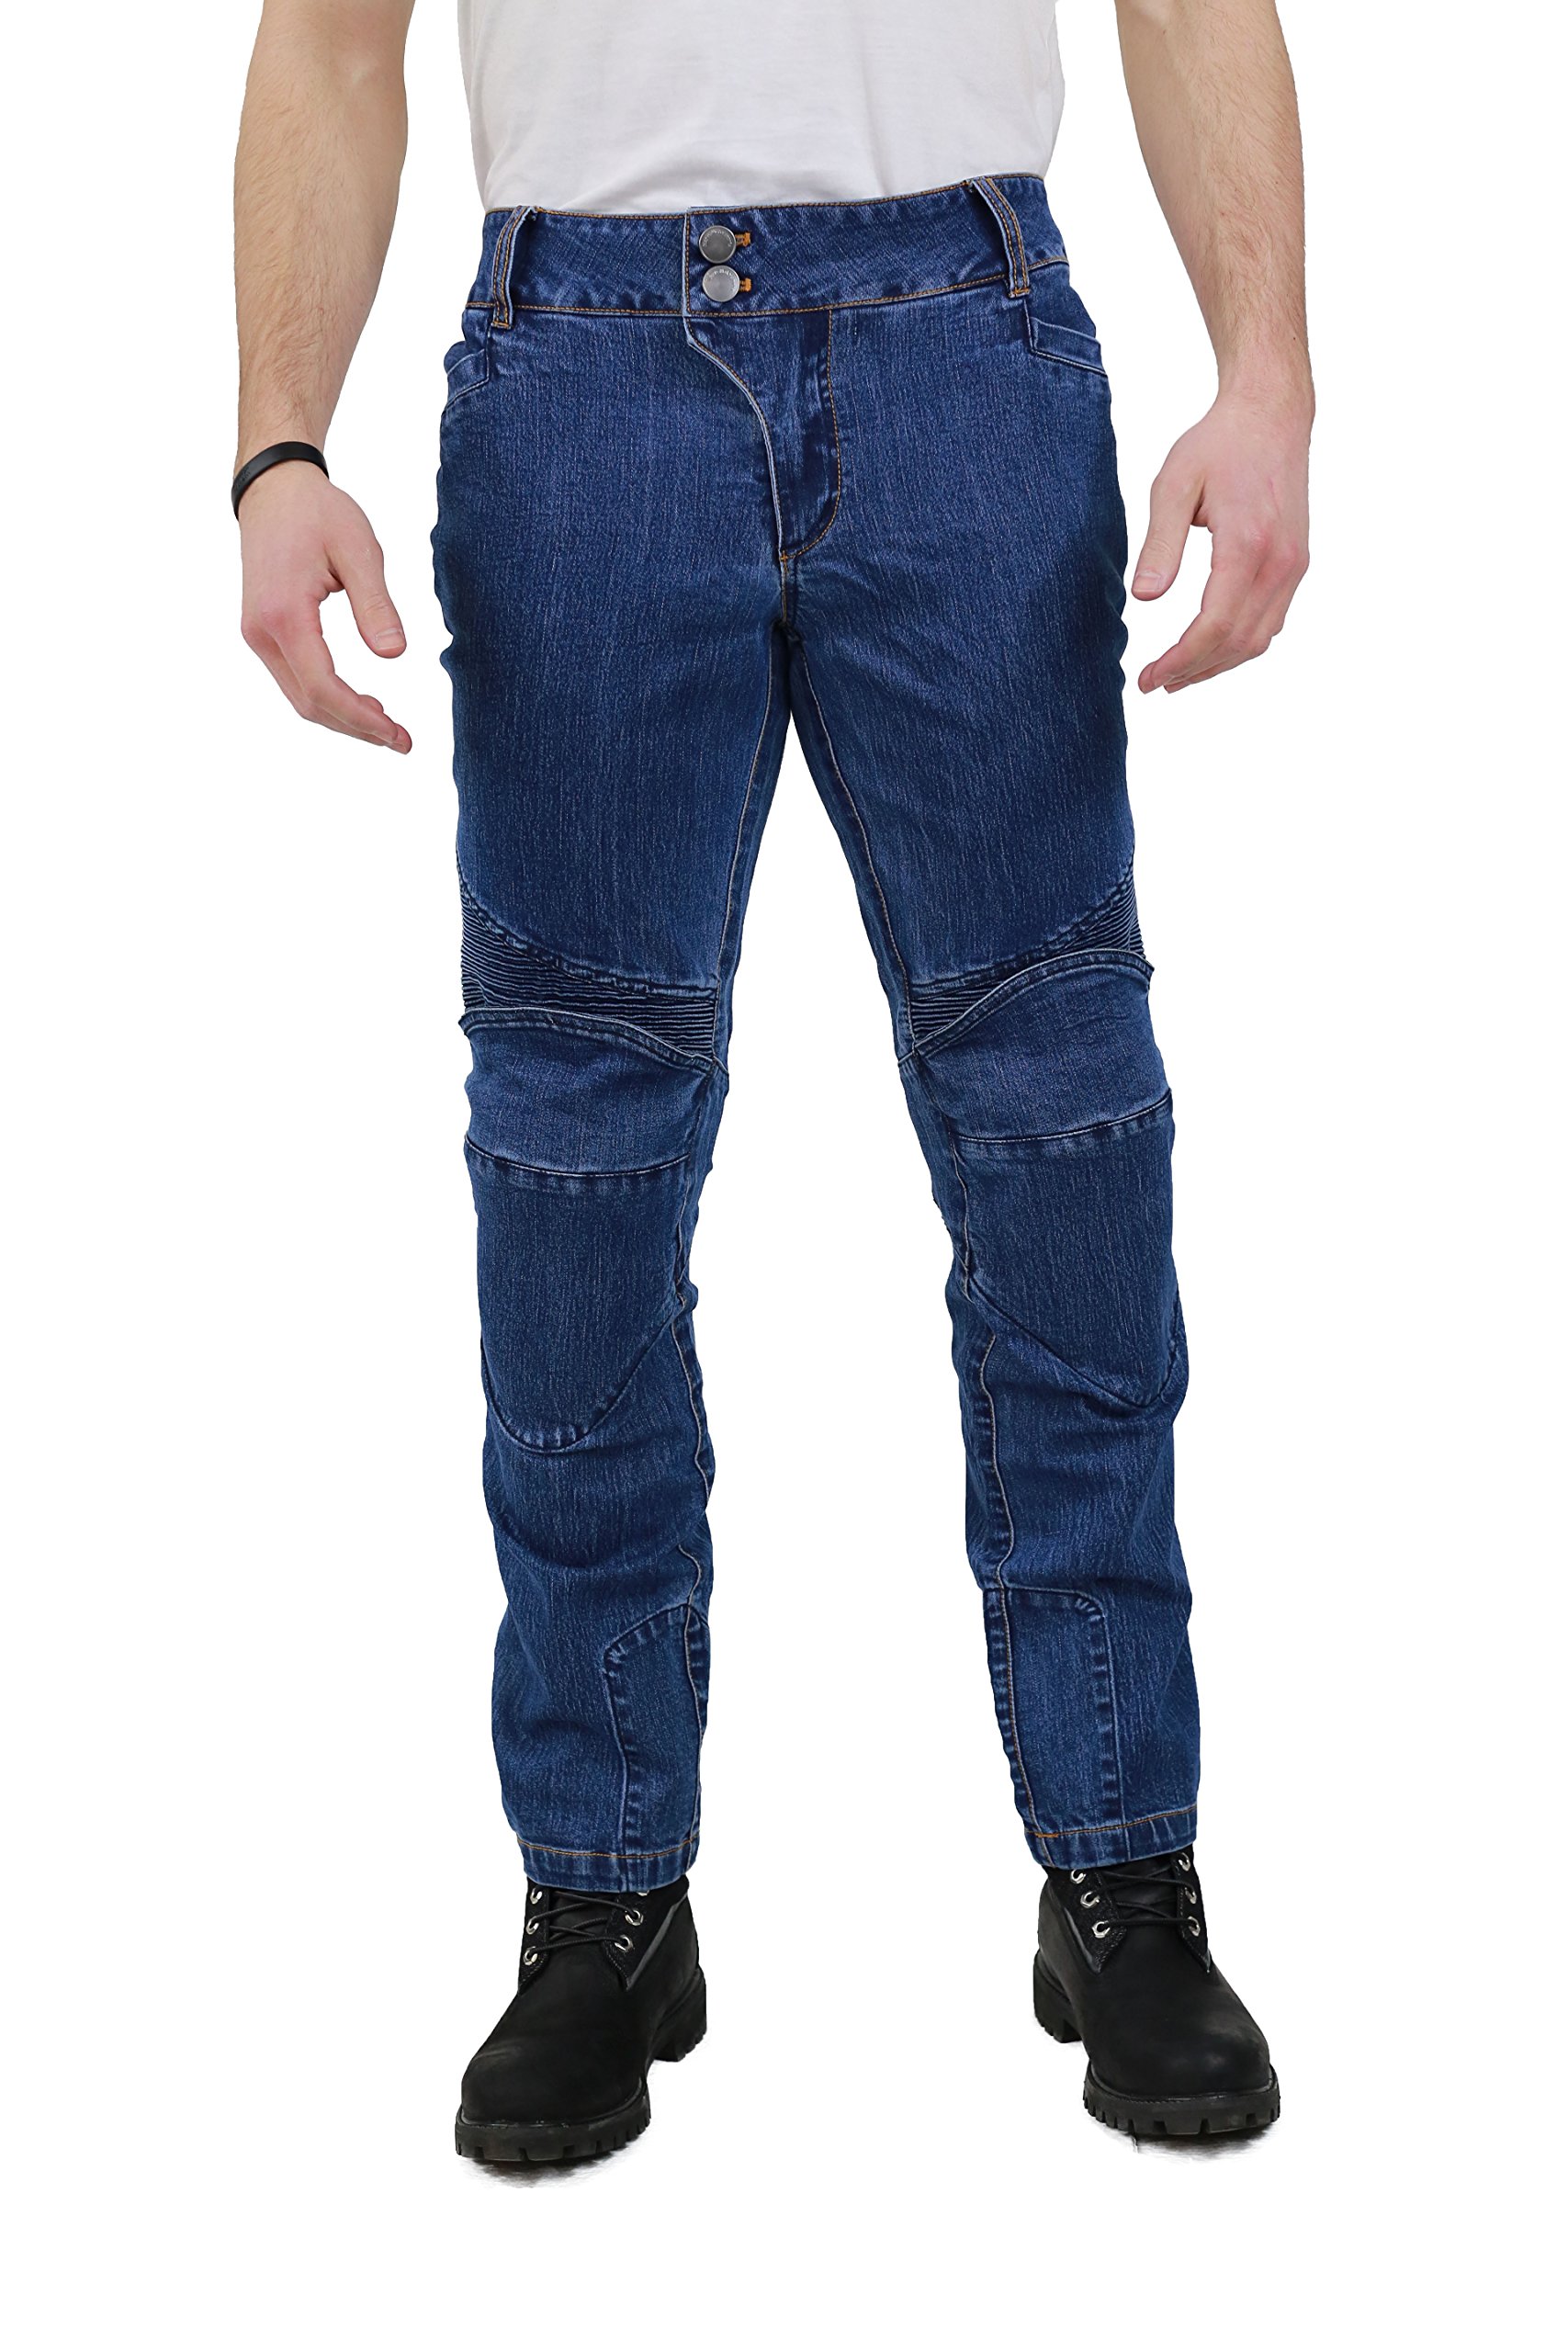 Nerve Ranger Herren Motorrad Jeans Hose, Blau, XL von Nerve